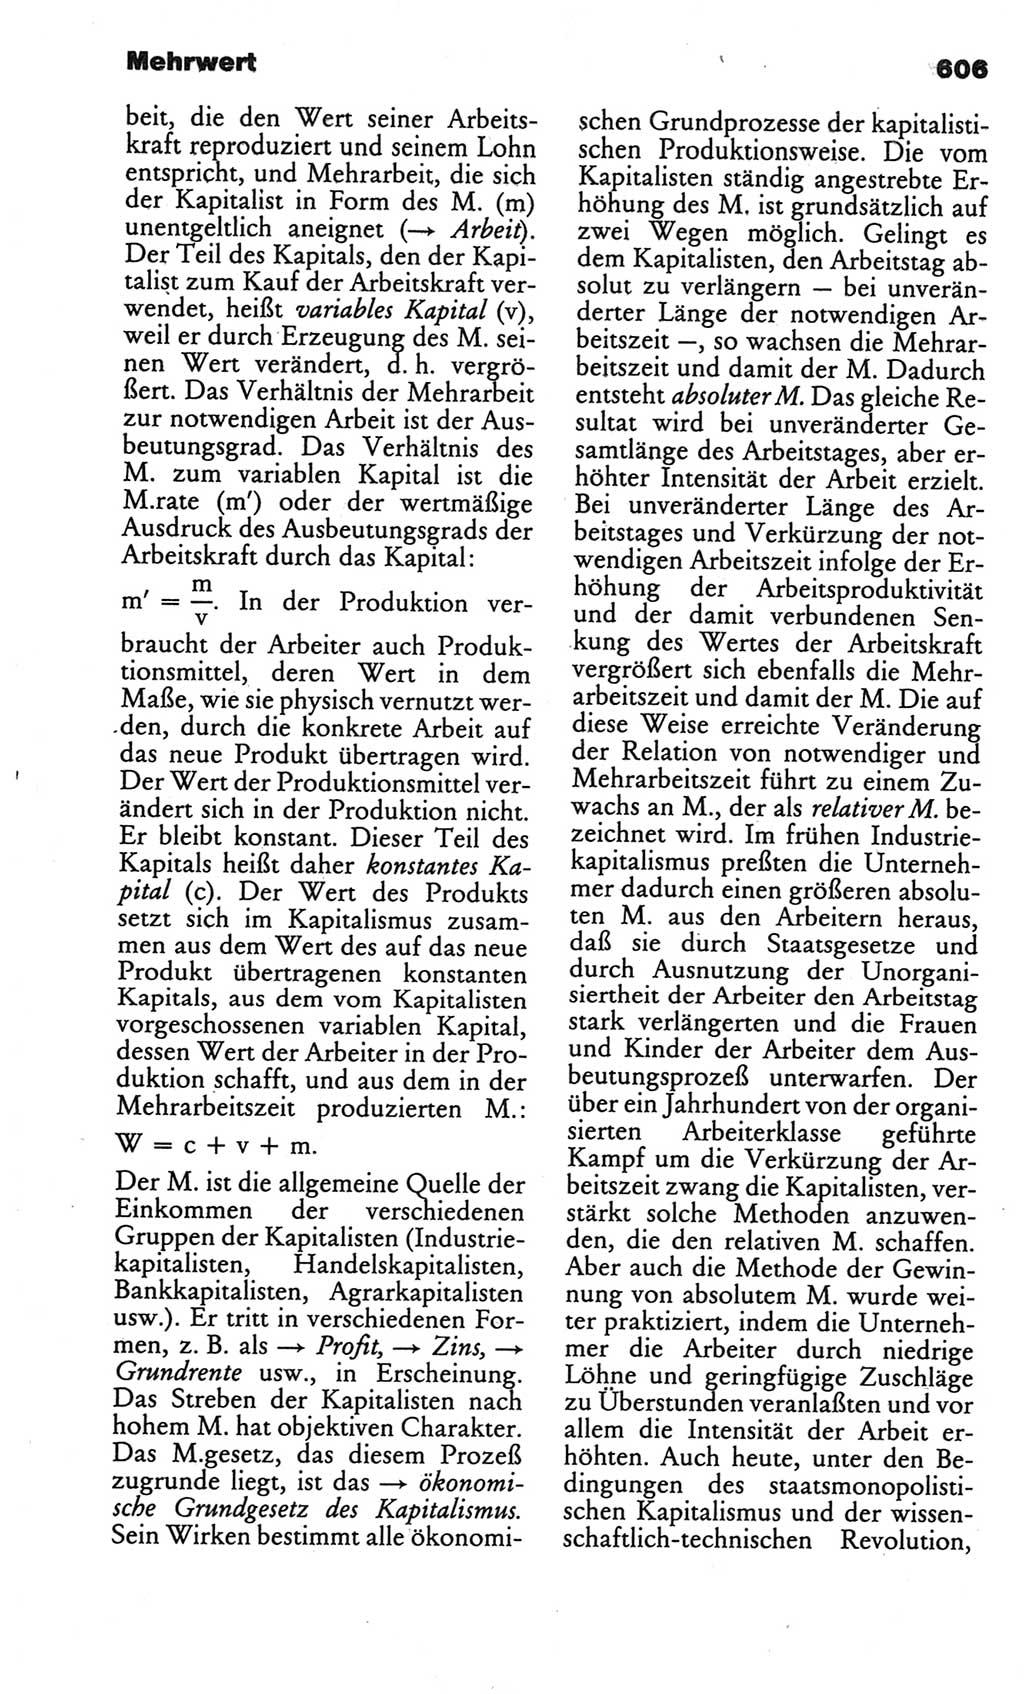 Kleines politisches Wörterbuch [Deutsche Demokratische Republik (DDR)] 1986, Seite 606 (Kl. pol. Wb. DDR 1986, S. 606)